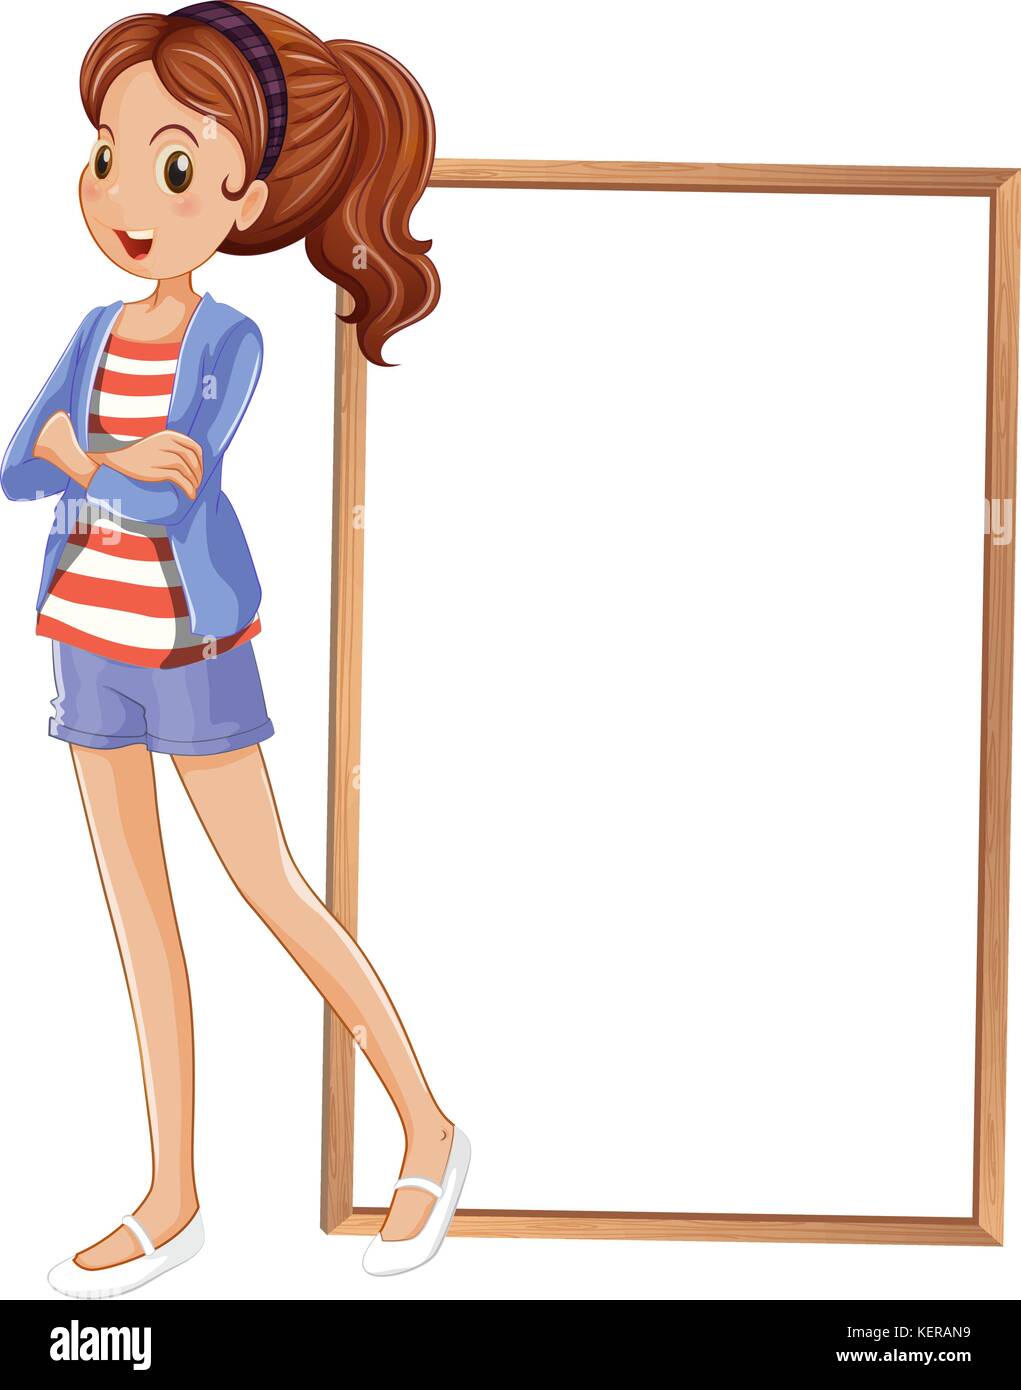 Abbildung: Ein Mädchen neben einem leeren rechteckigen Rahmen auf weißem Hintergrund Stock Vektor